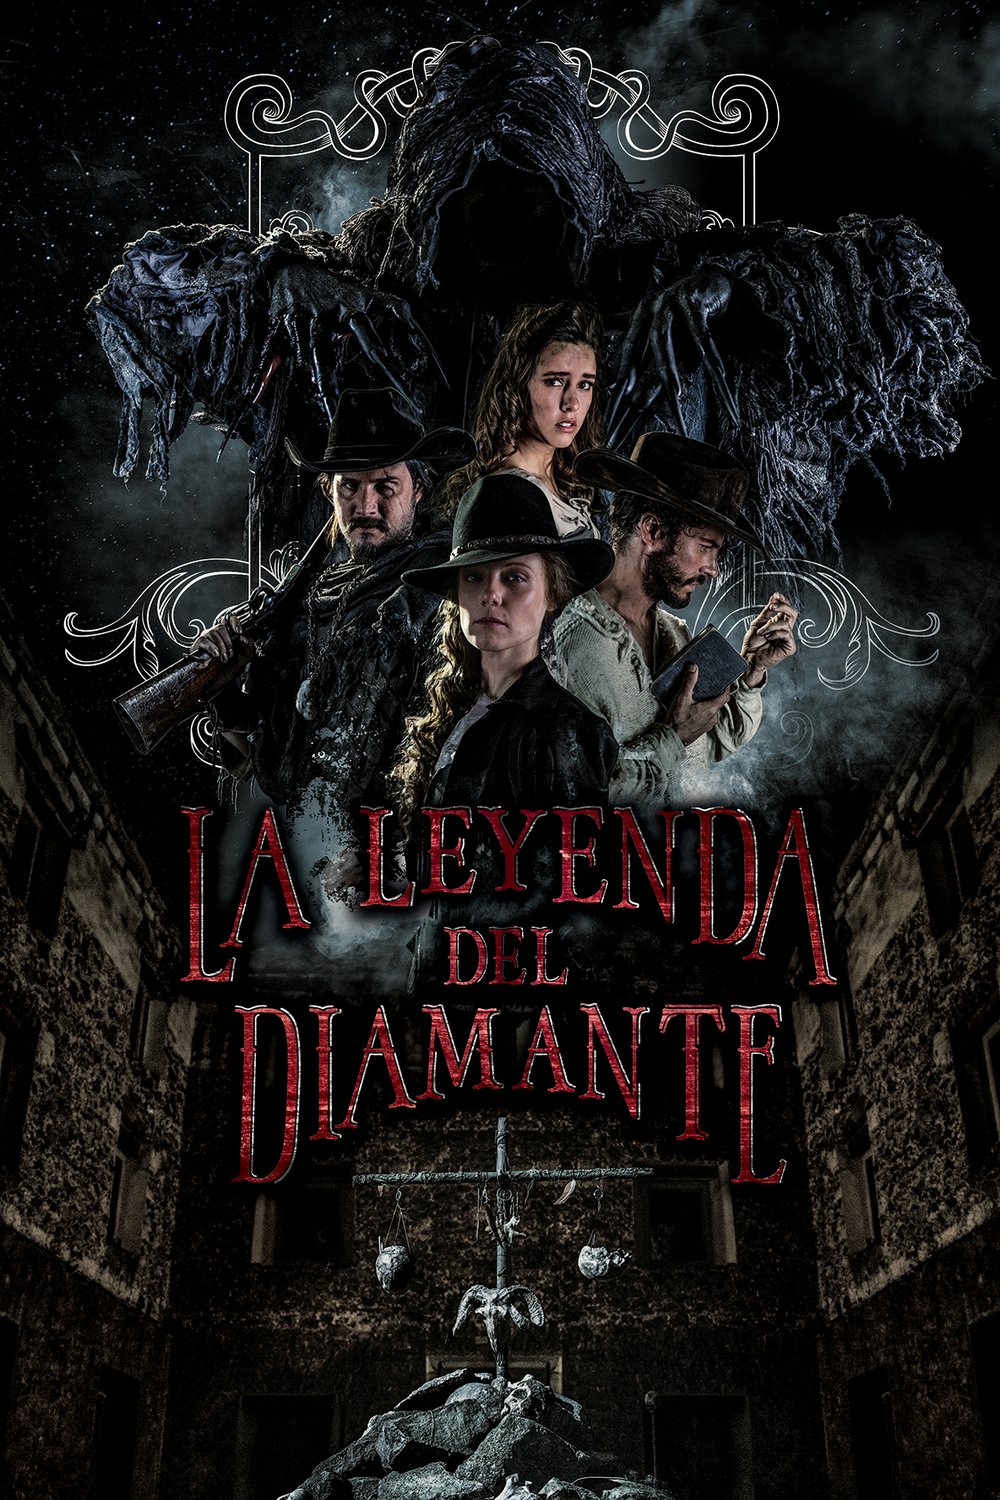 L'affiche originale du film La Leyenda del Diamante en espagnol